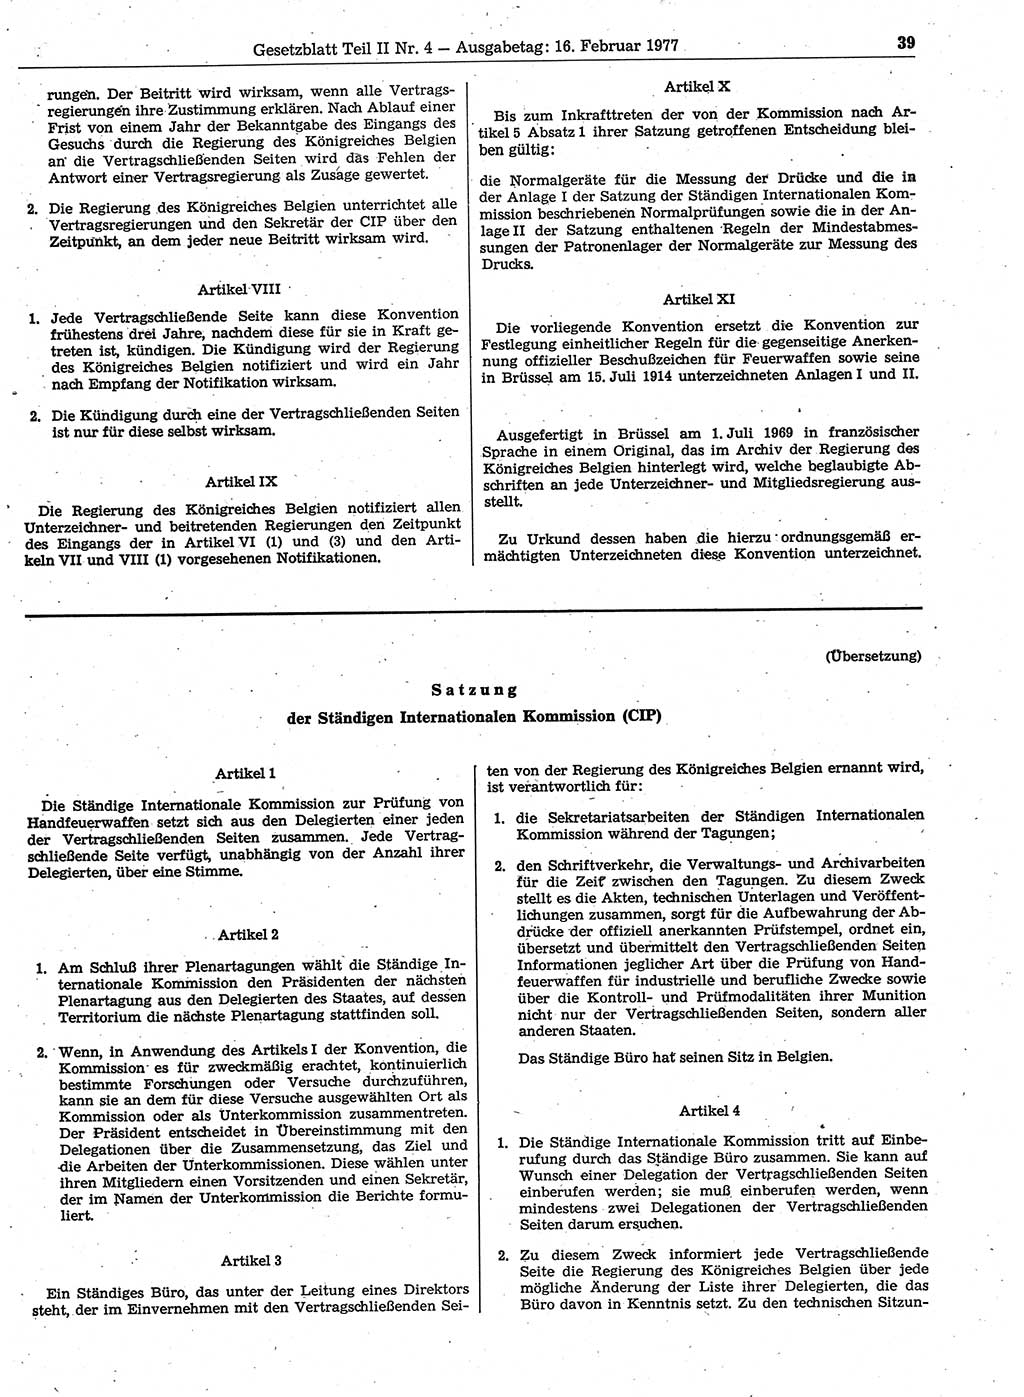 Gesetzblatt (GBl.) der Deutschen Demokratischen Republik (DDR) Teil ⅠⅠ 1977, Seite 39 (GBl. DDR ⅠⅠ 1977, S. 39)